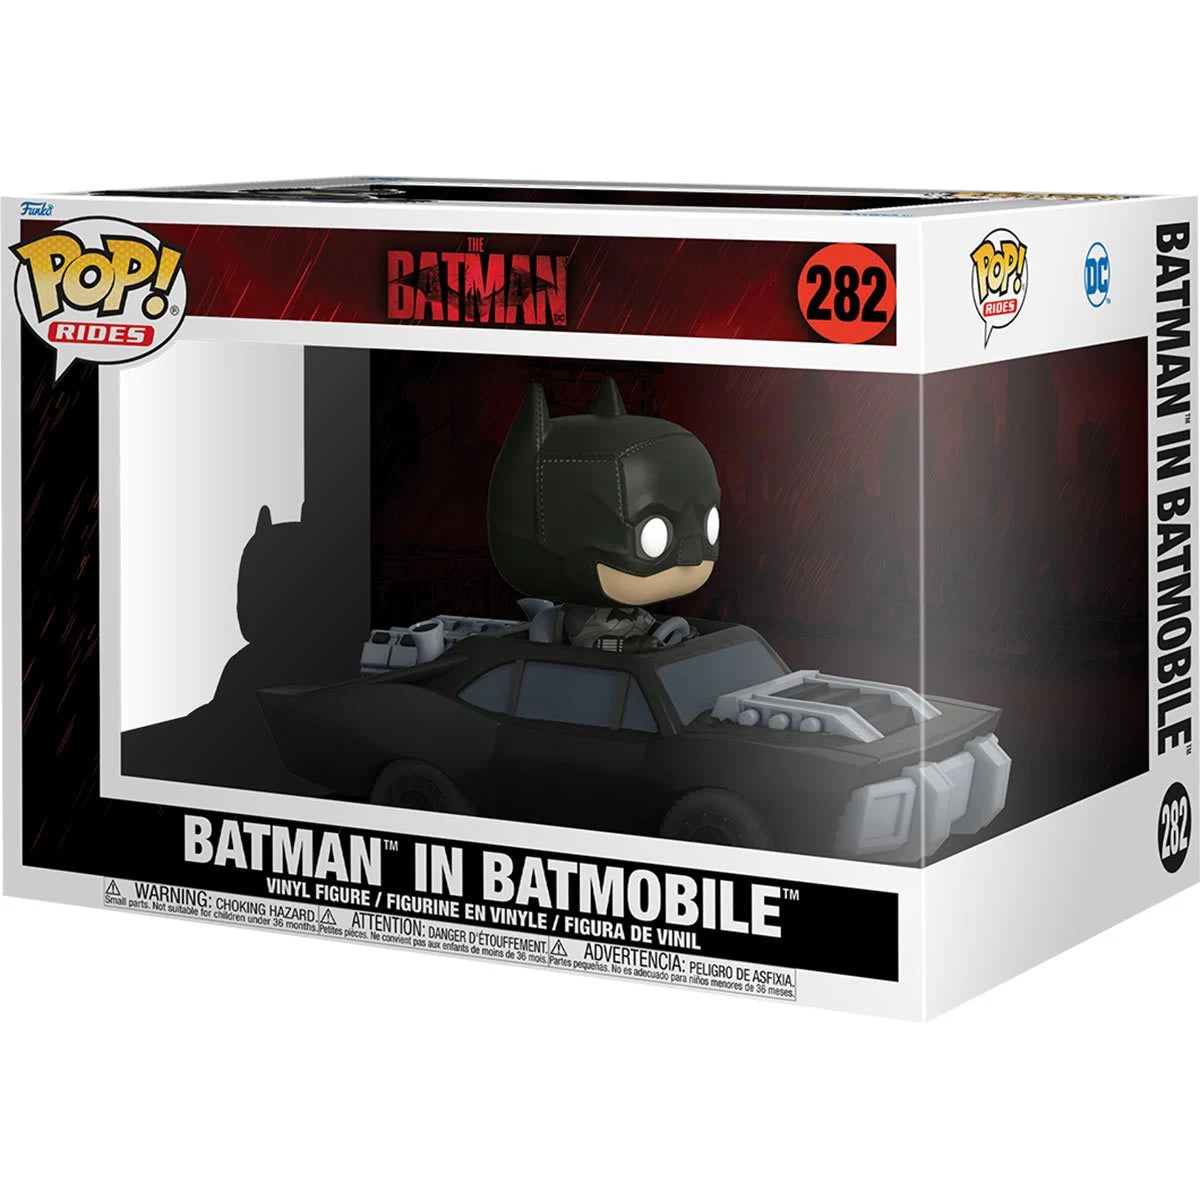 The Batman in Batmobile Super Deluxe Pop! Vinyl Vehicle